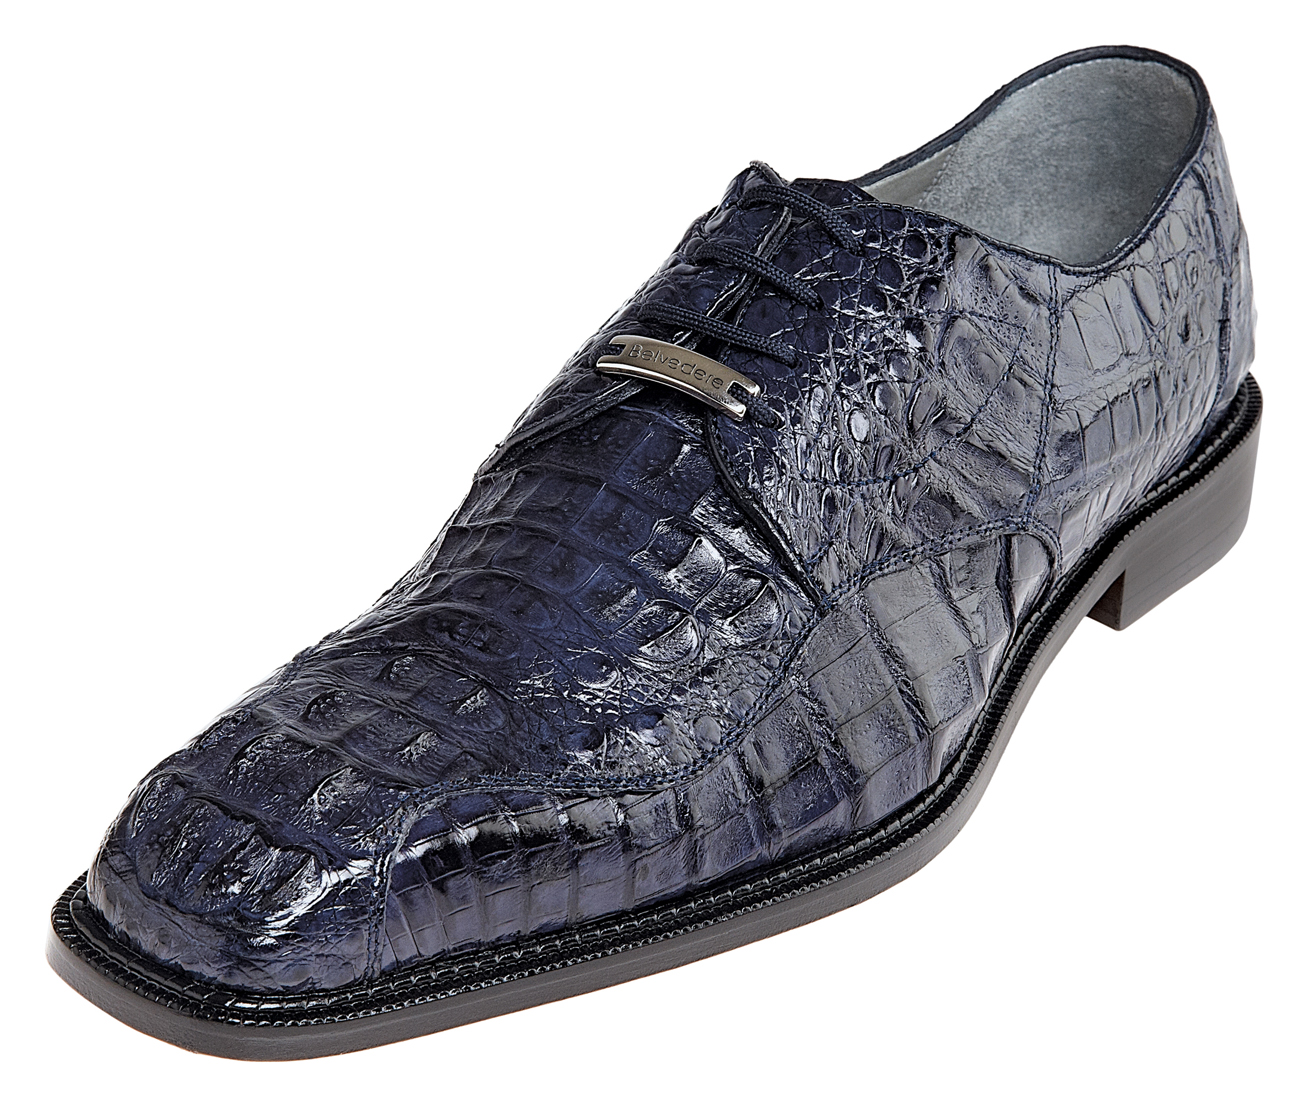 men's crocodile dress shoes